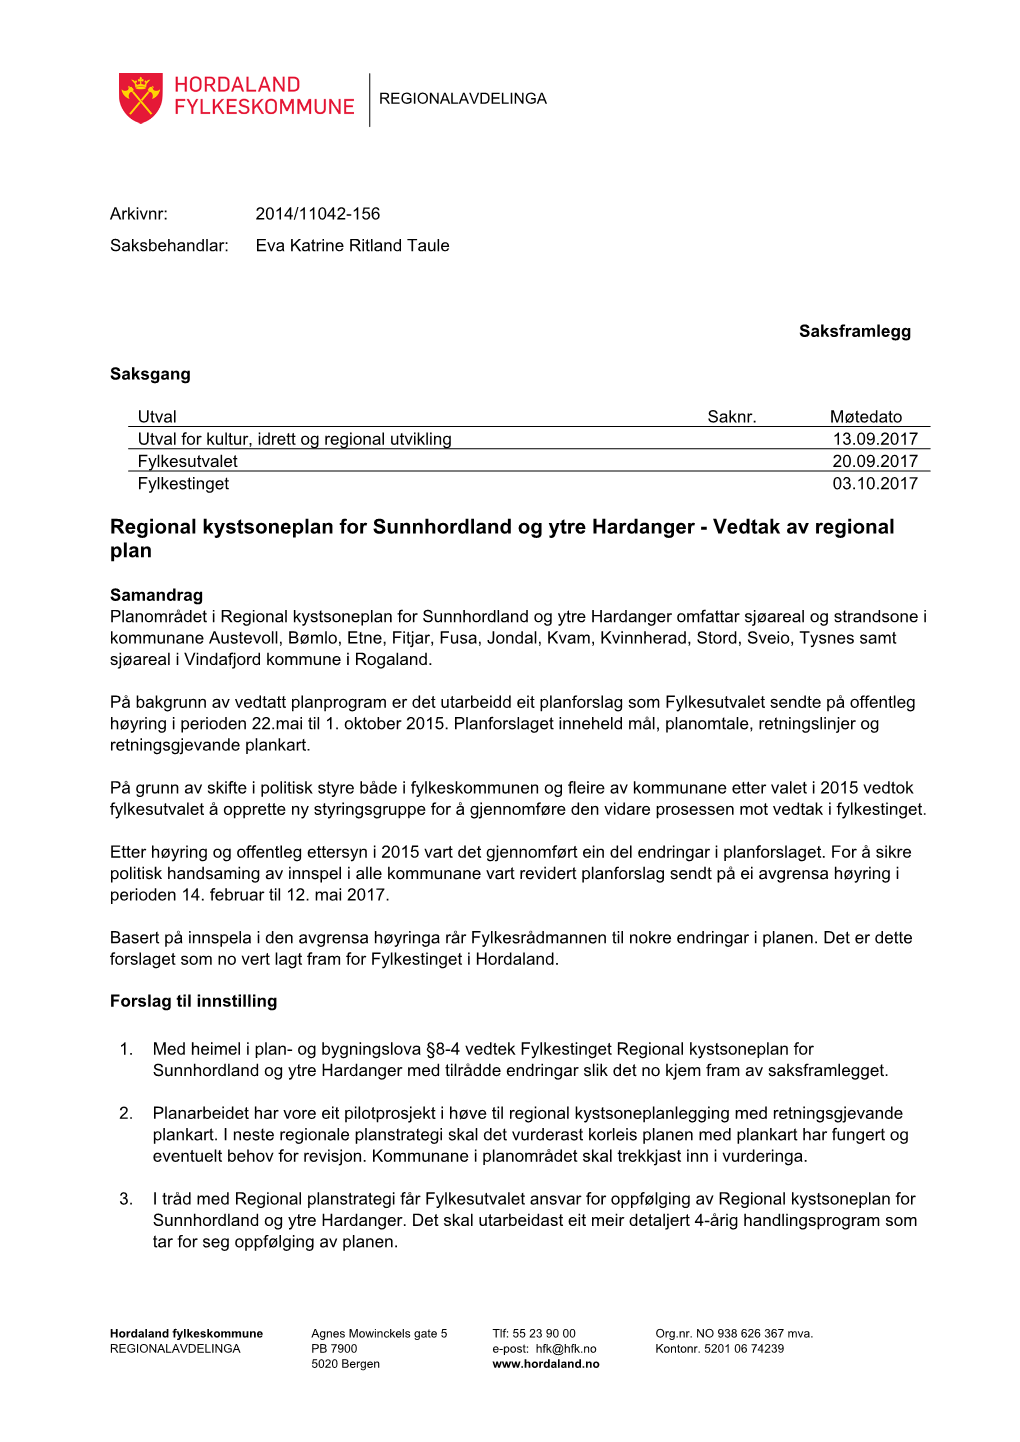 Regional Kystsoneplan for Sunnhordland Og Ytre Hardanger - Vedtak Av Regional Plan